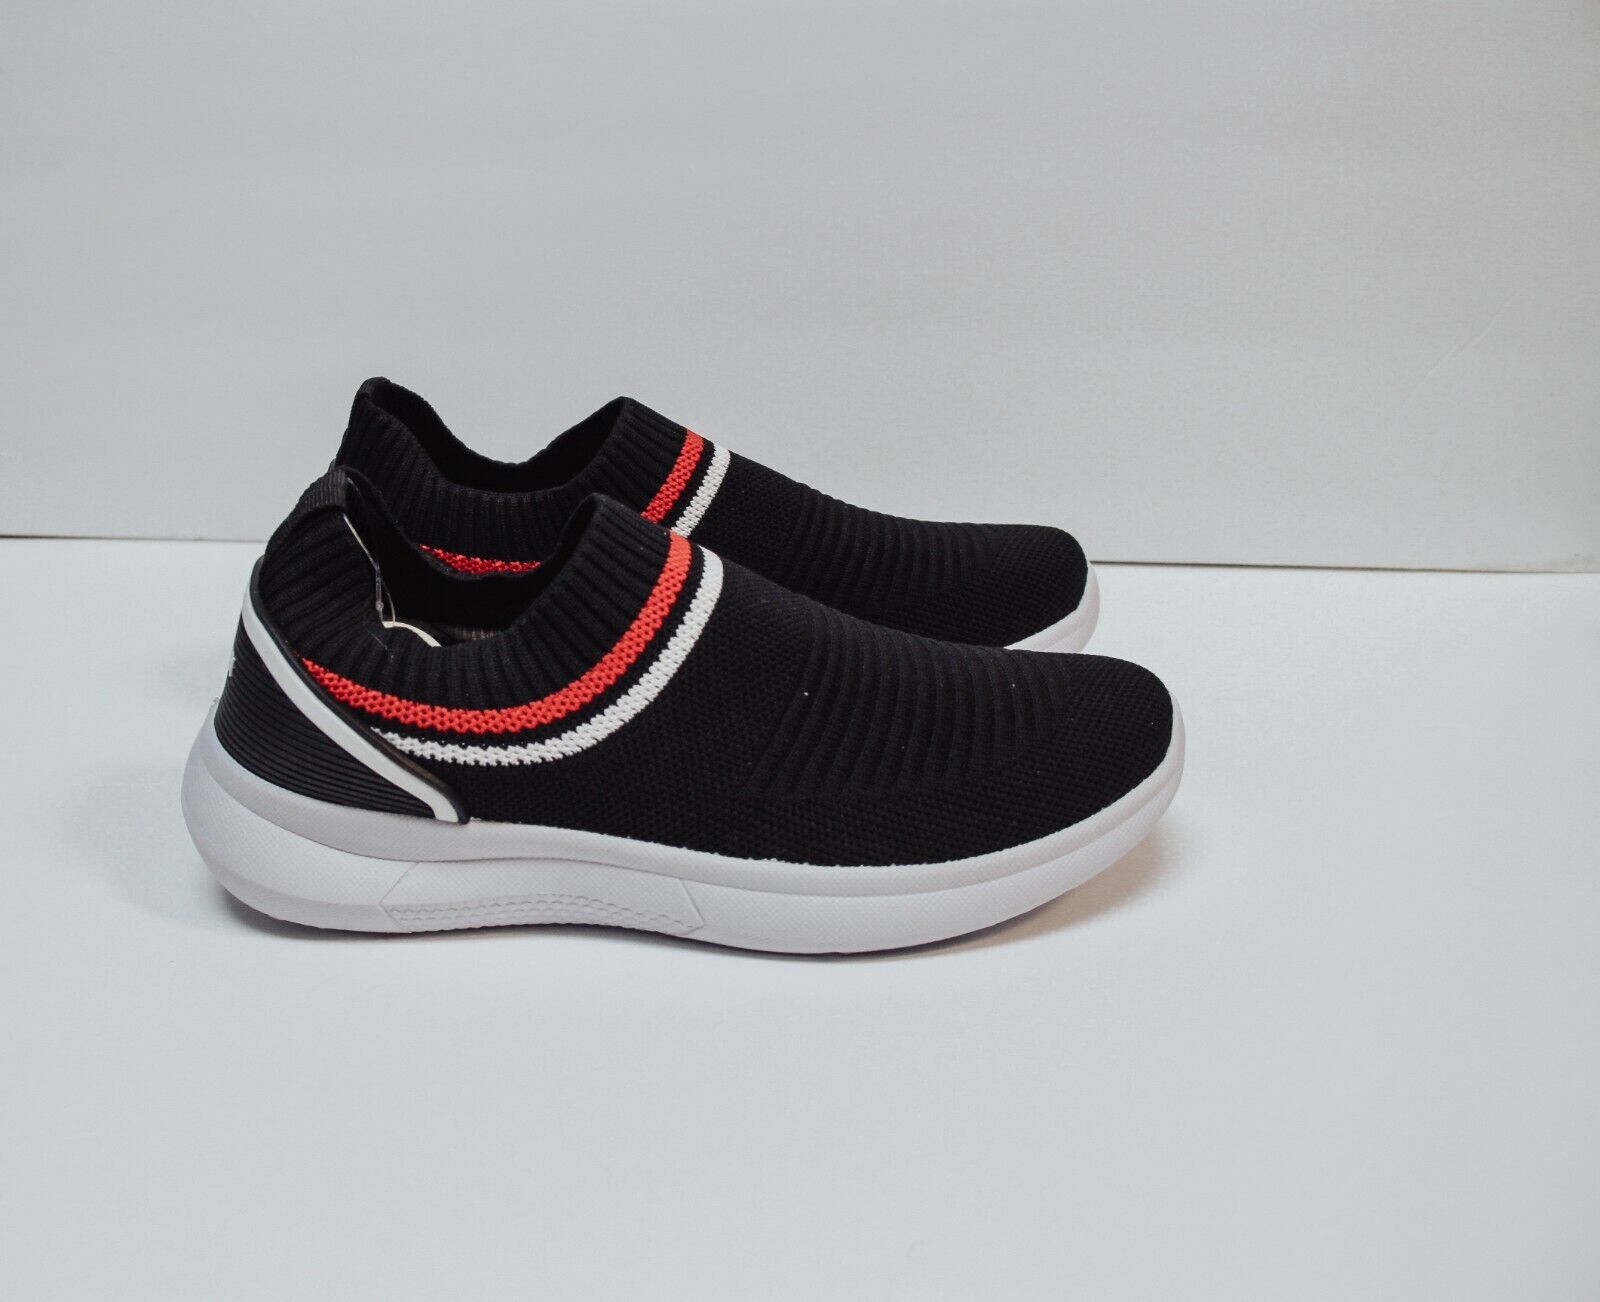 Danskin Charming Slip On Sneakers Womens Black Knit Shoes Low Top NEW  | eBay | eBay US